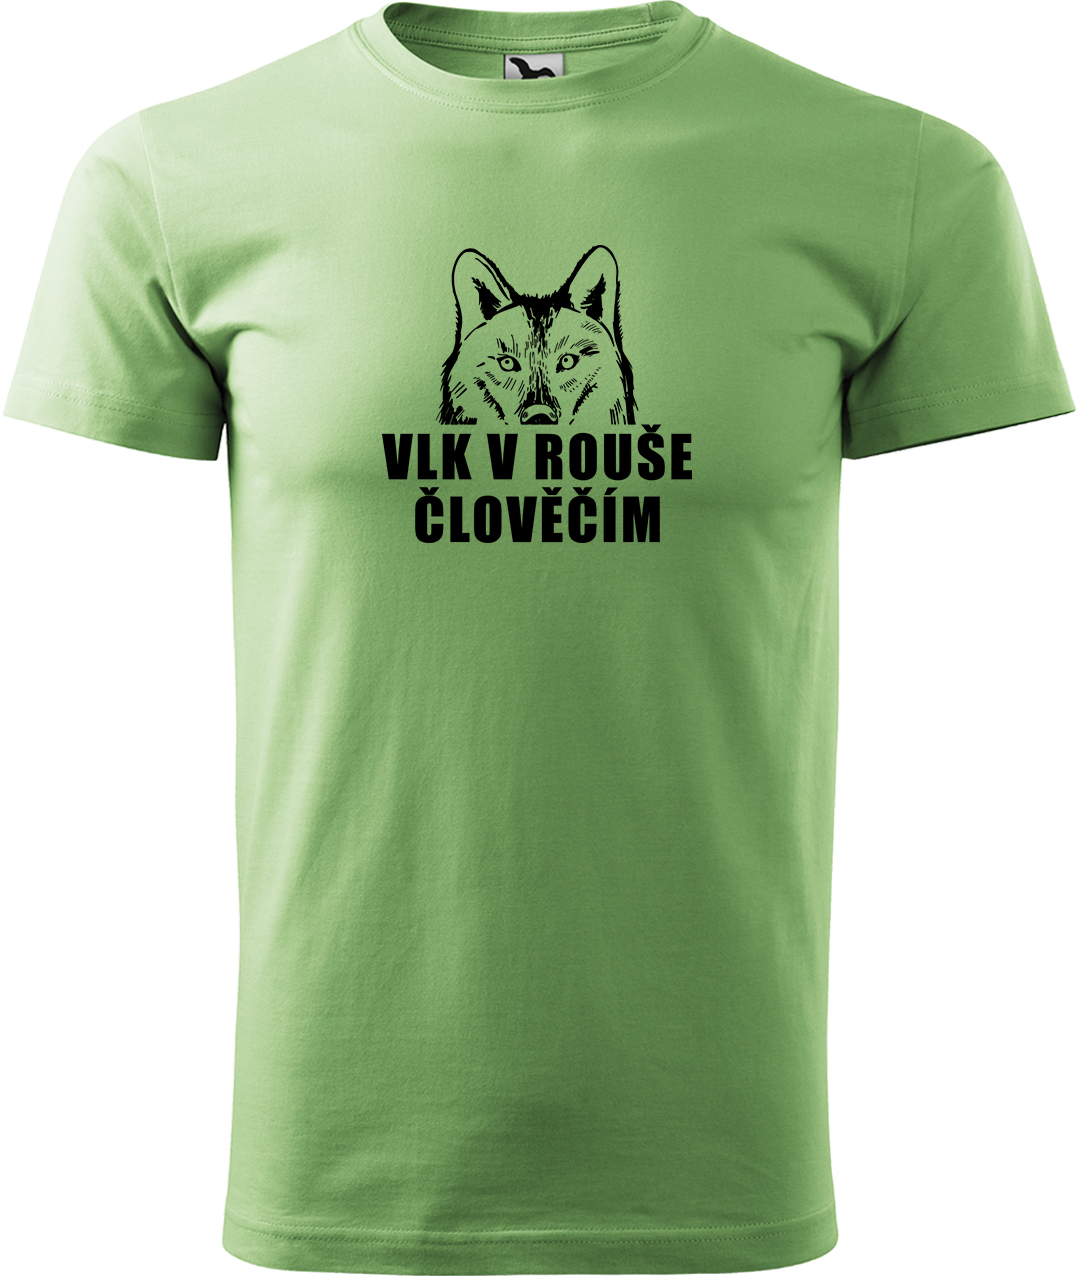 Pánské tričko s vlkem - Vlk v rouše člověčím Velikost: M, Barva: Trávově zelená (39), Střih: pánský